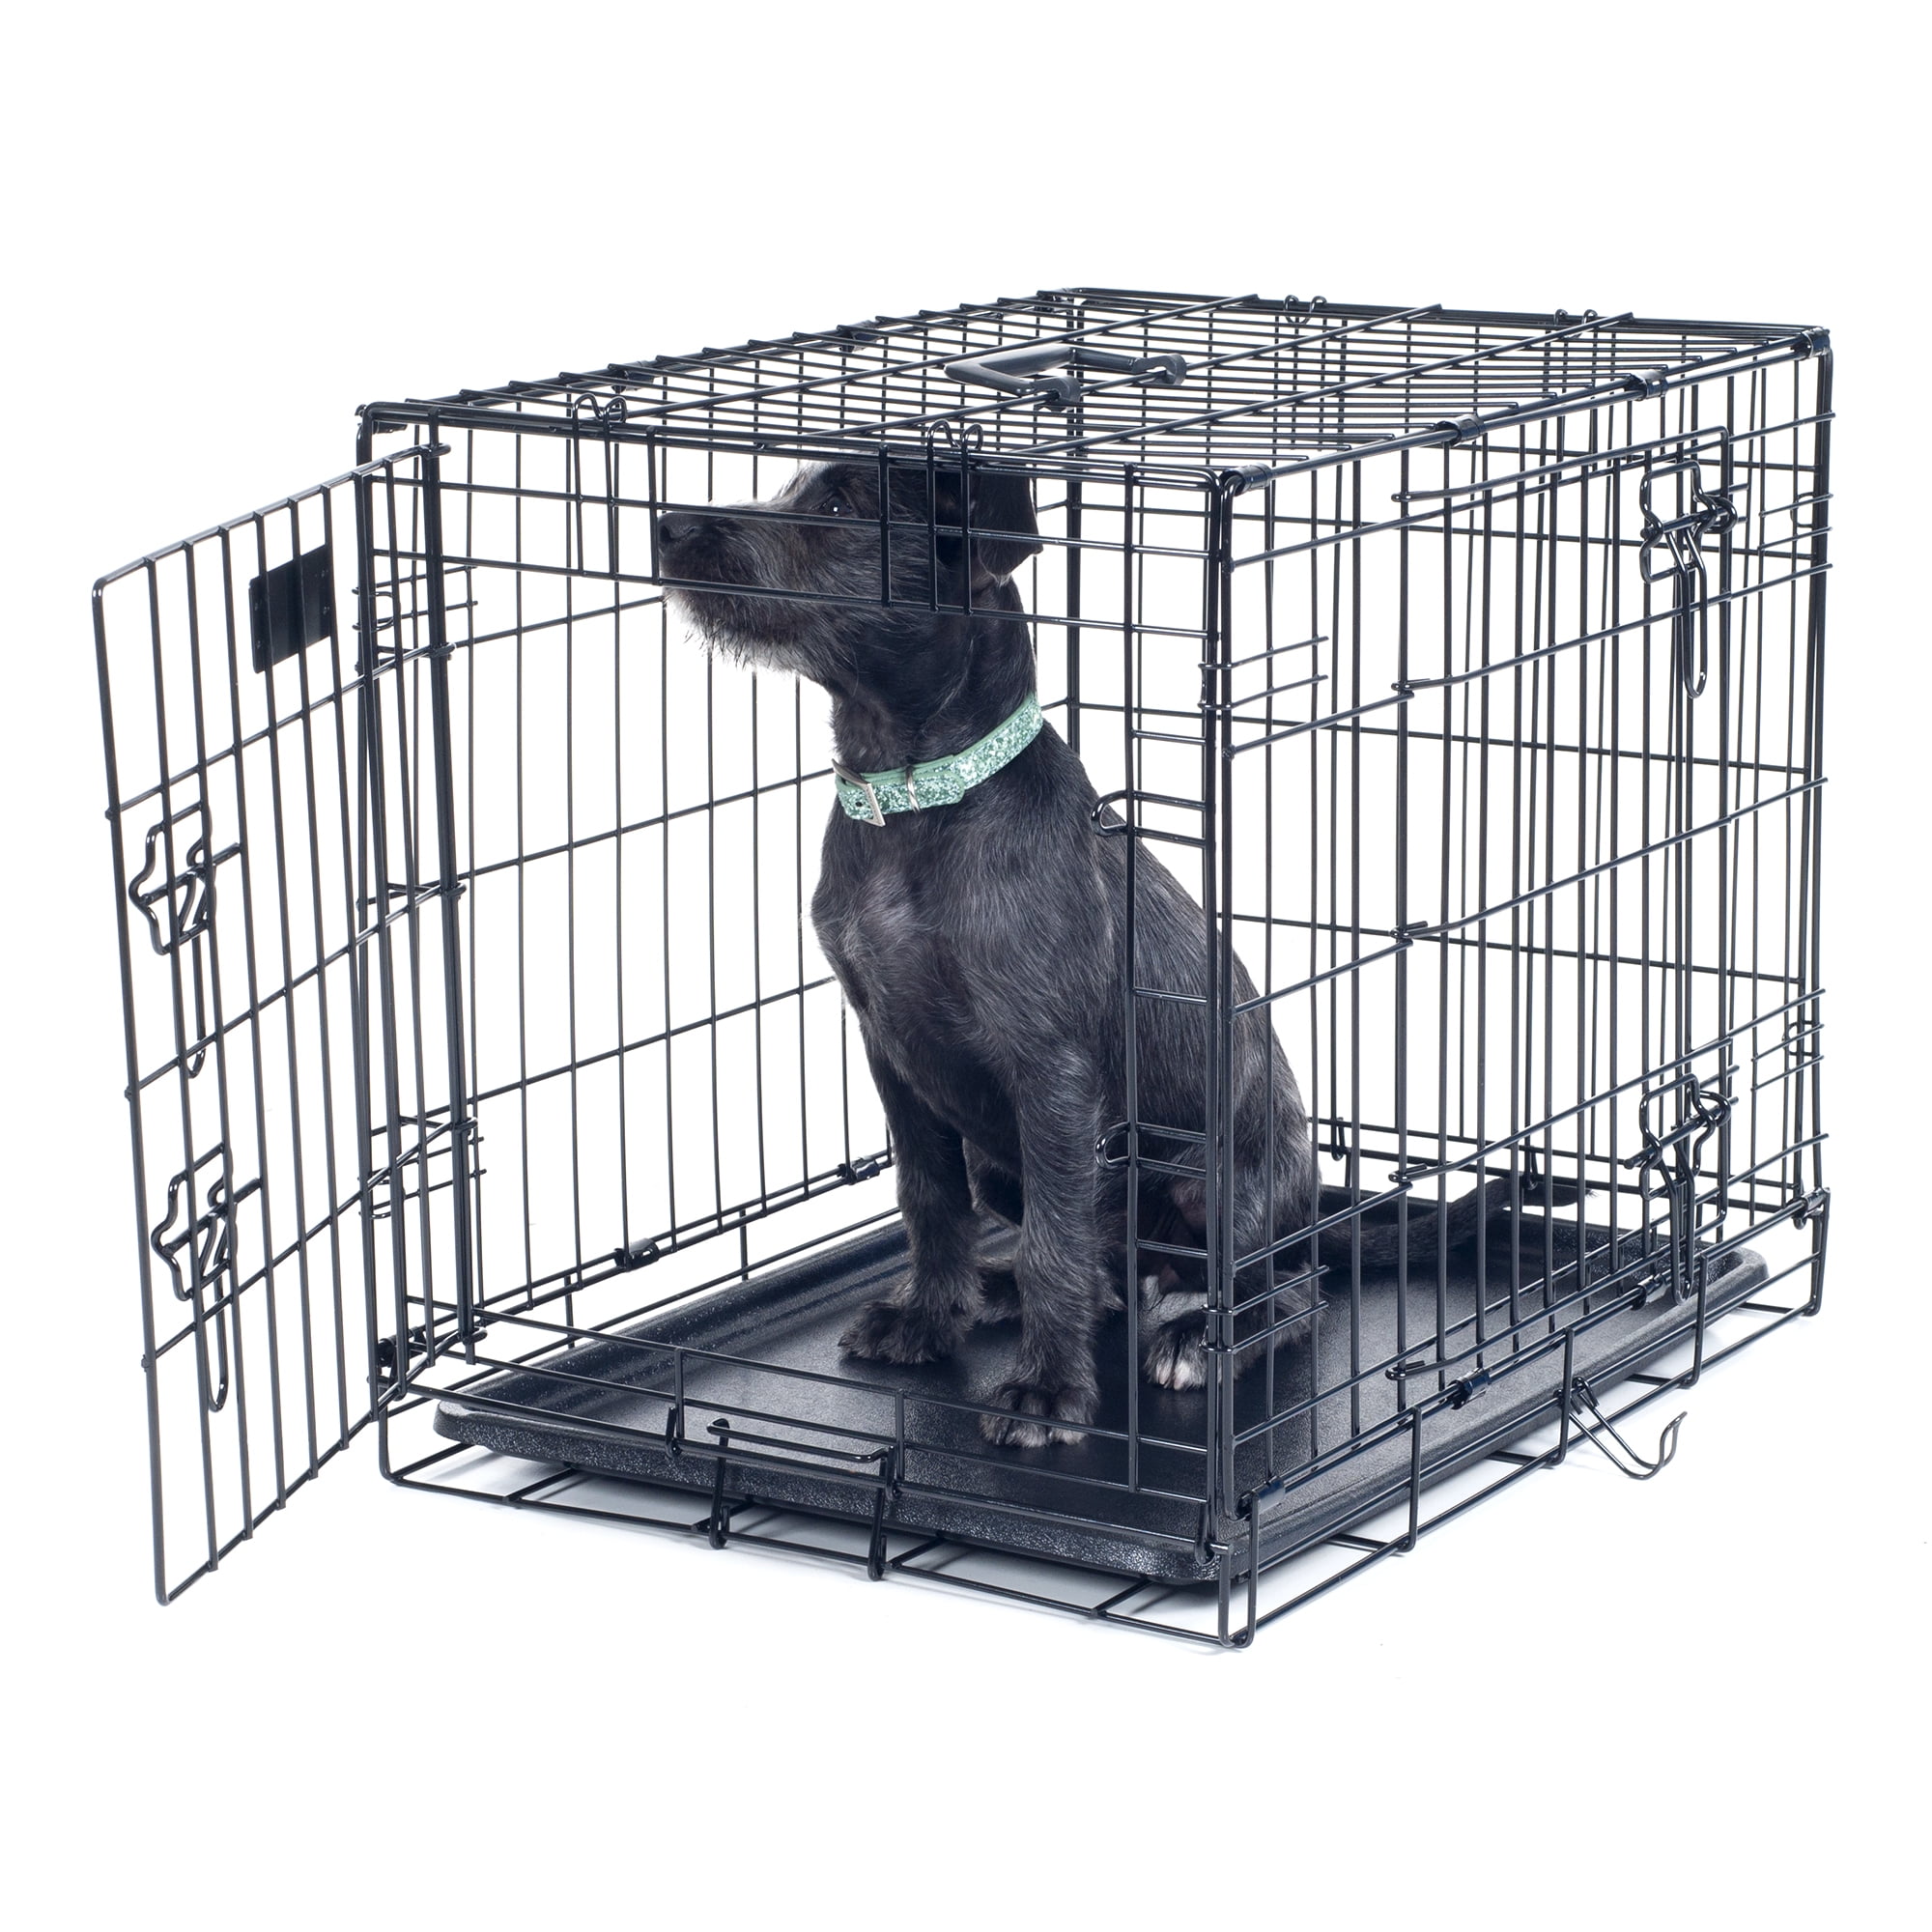 puppy cage walmart